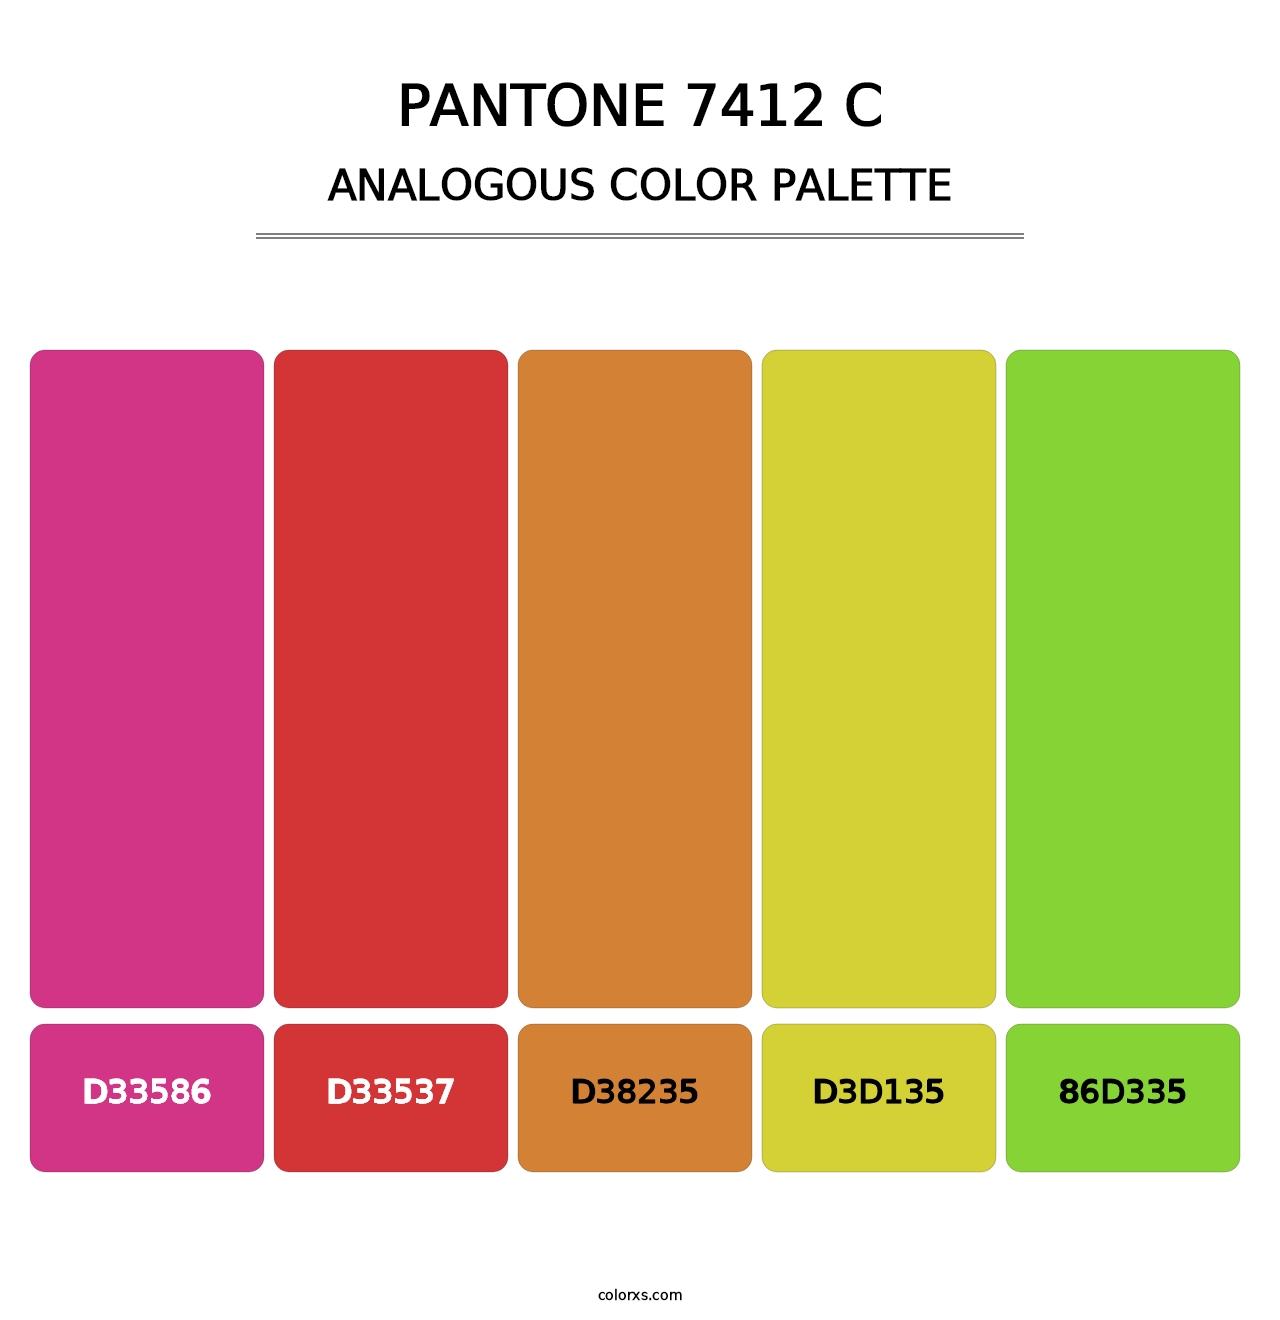 PANTONE 7412 C - Analogous Color Palette